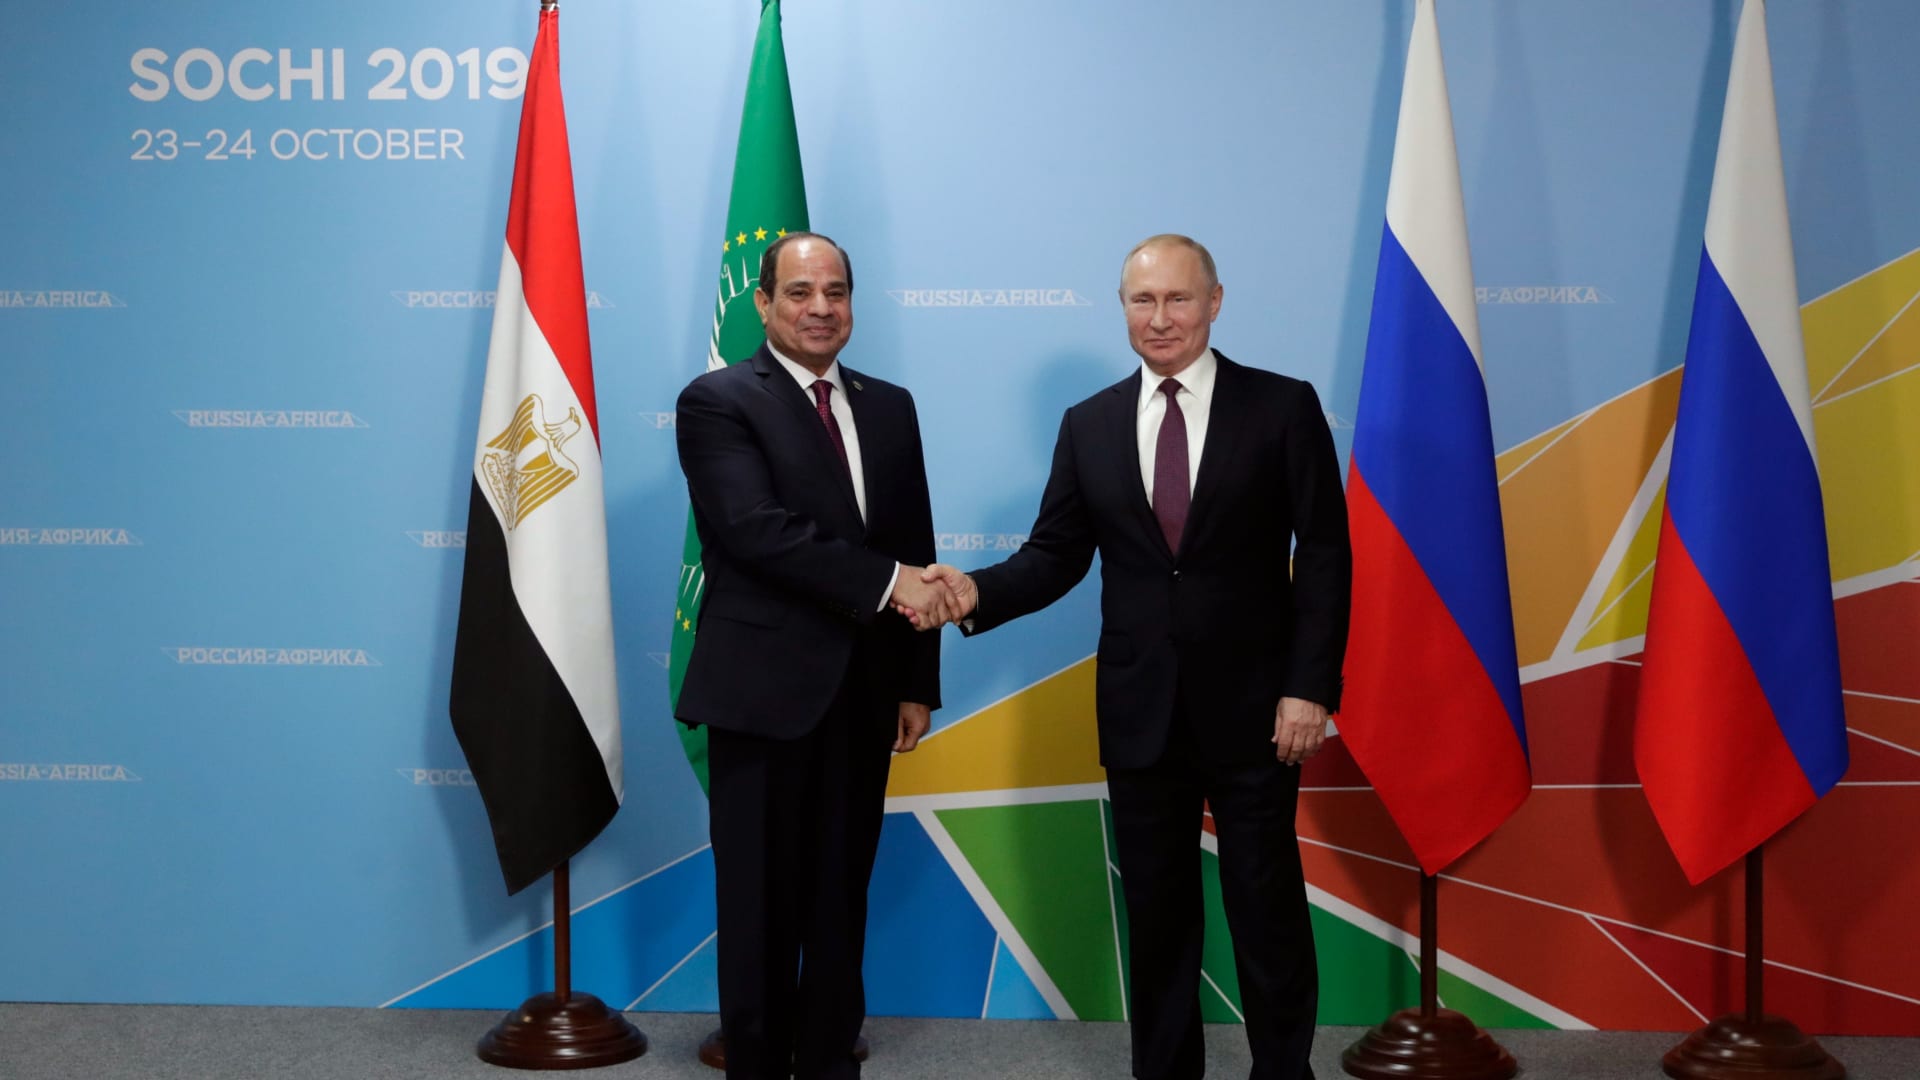 بمنتدى "أفريقيا - روسيا".. بوتين يعلن انشاء 23 شركة بمصر والسيسي يبرز الفرص